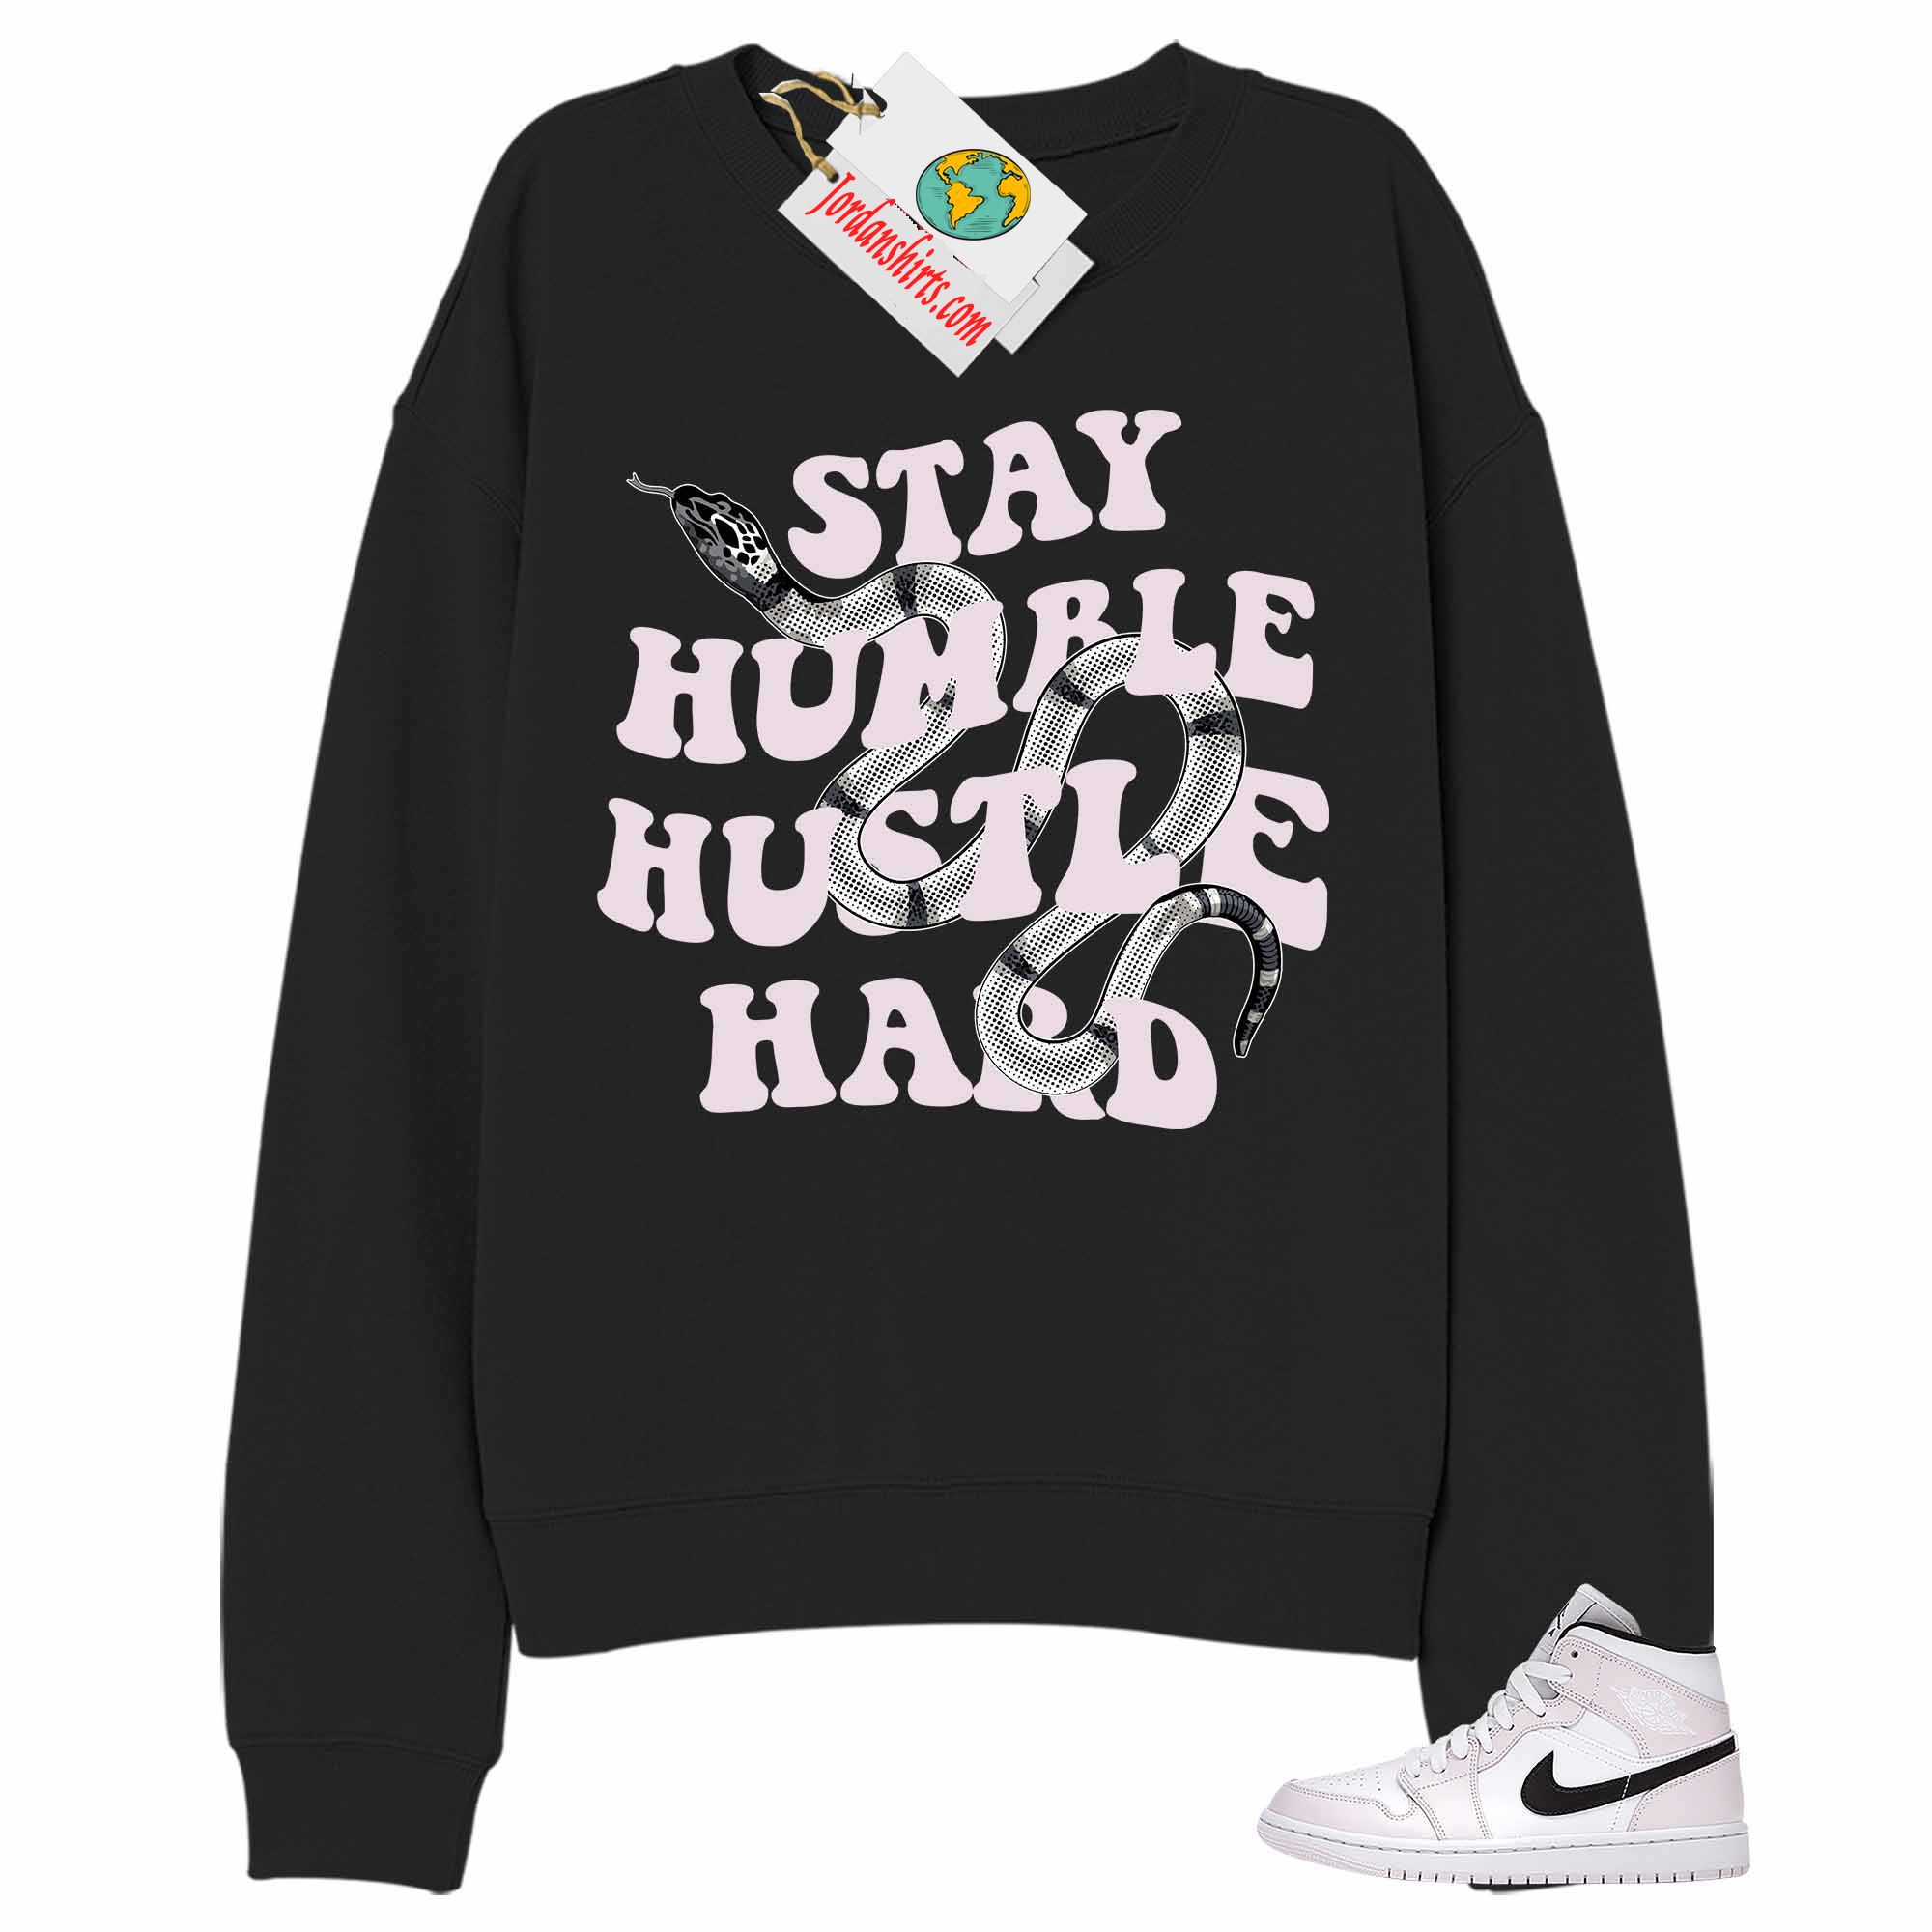 Jordan 1 Sweatshirt, Stay Humble Hustle Hard King Snake Black Sweatshirt Air Jordan 1 Barely Rose 1s Size Up To 5xl